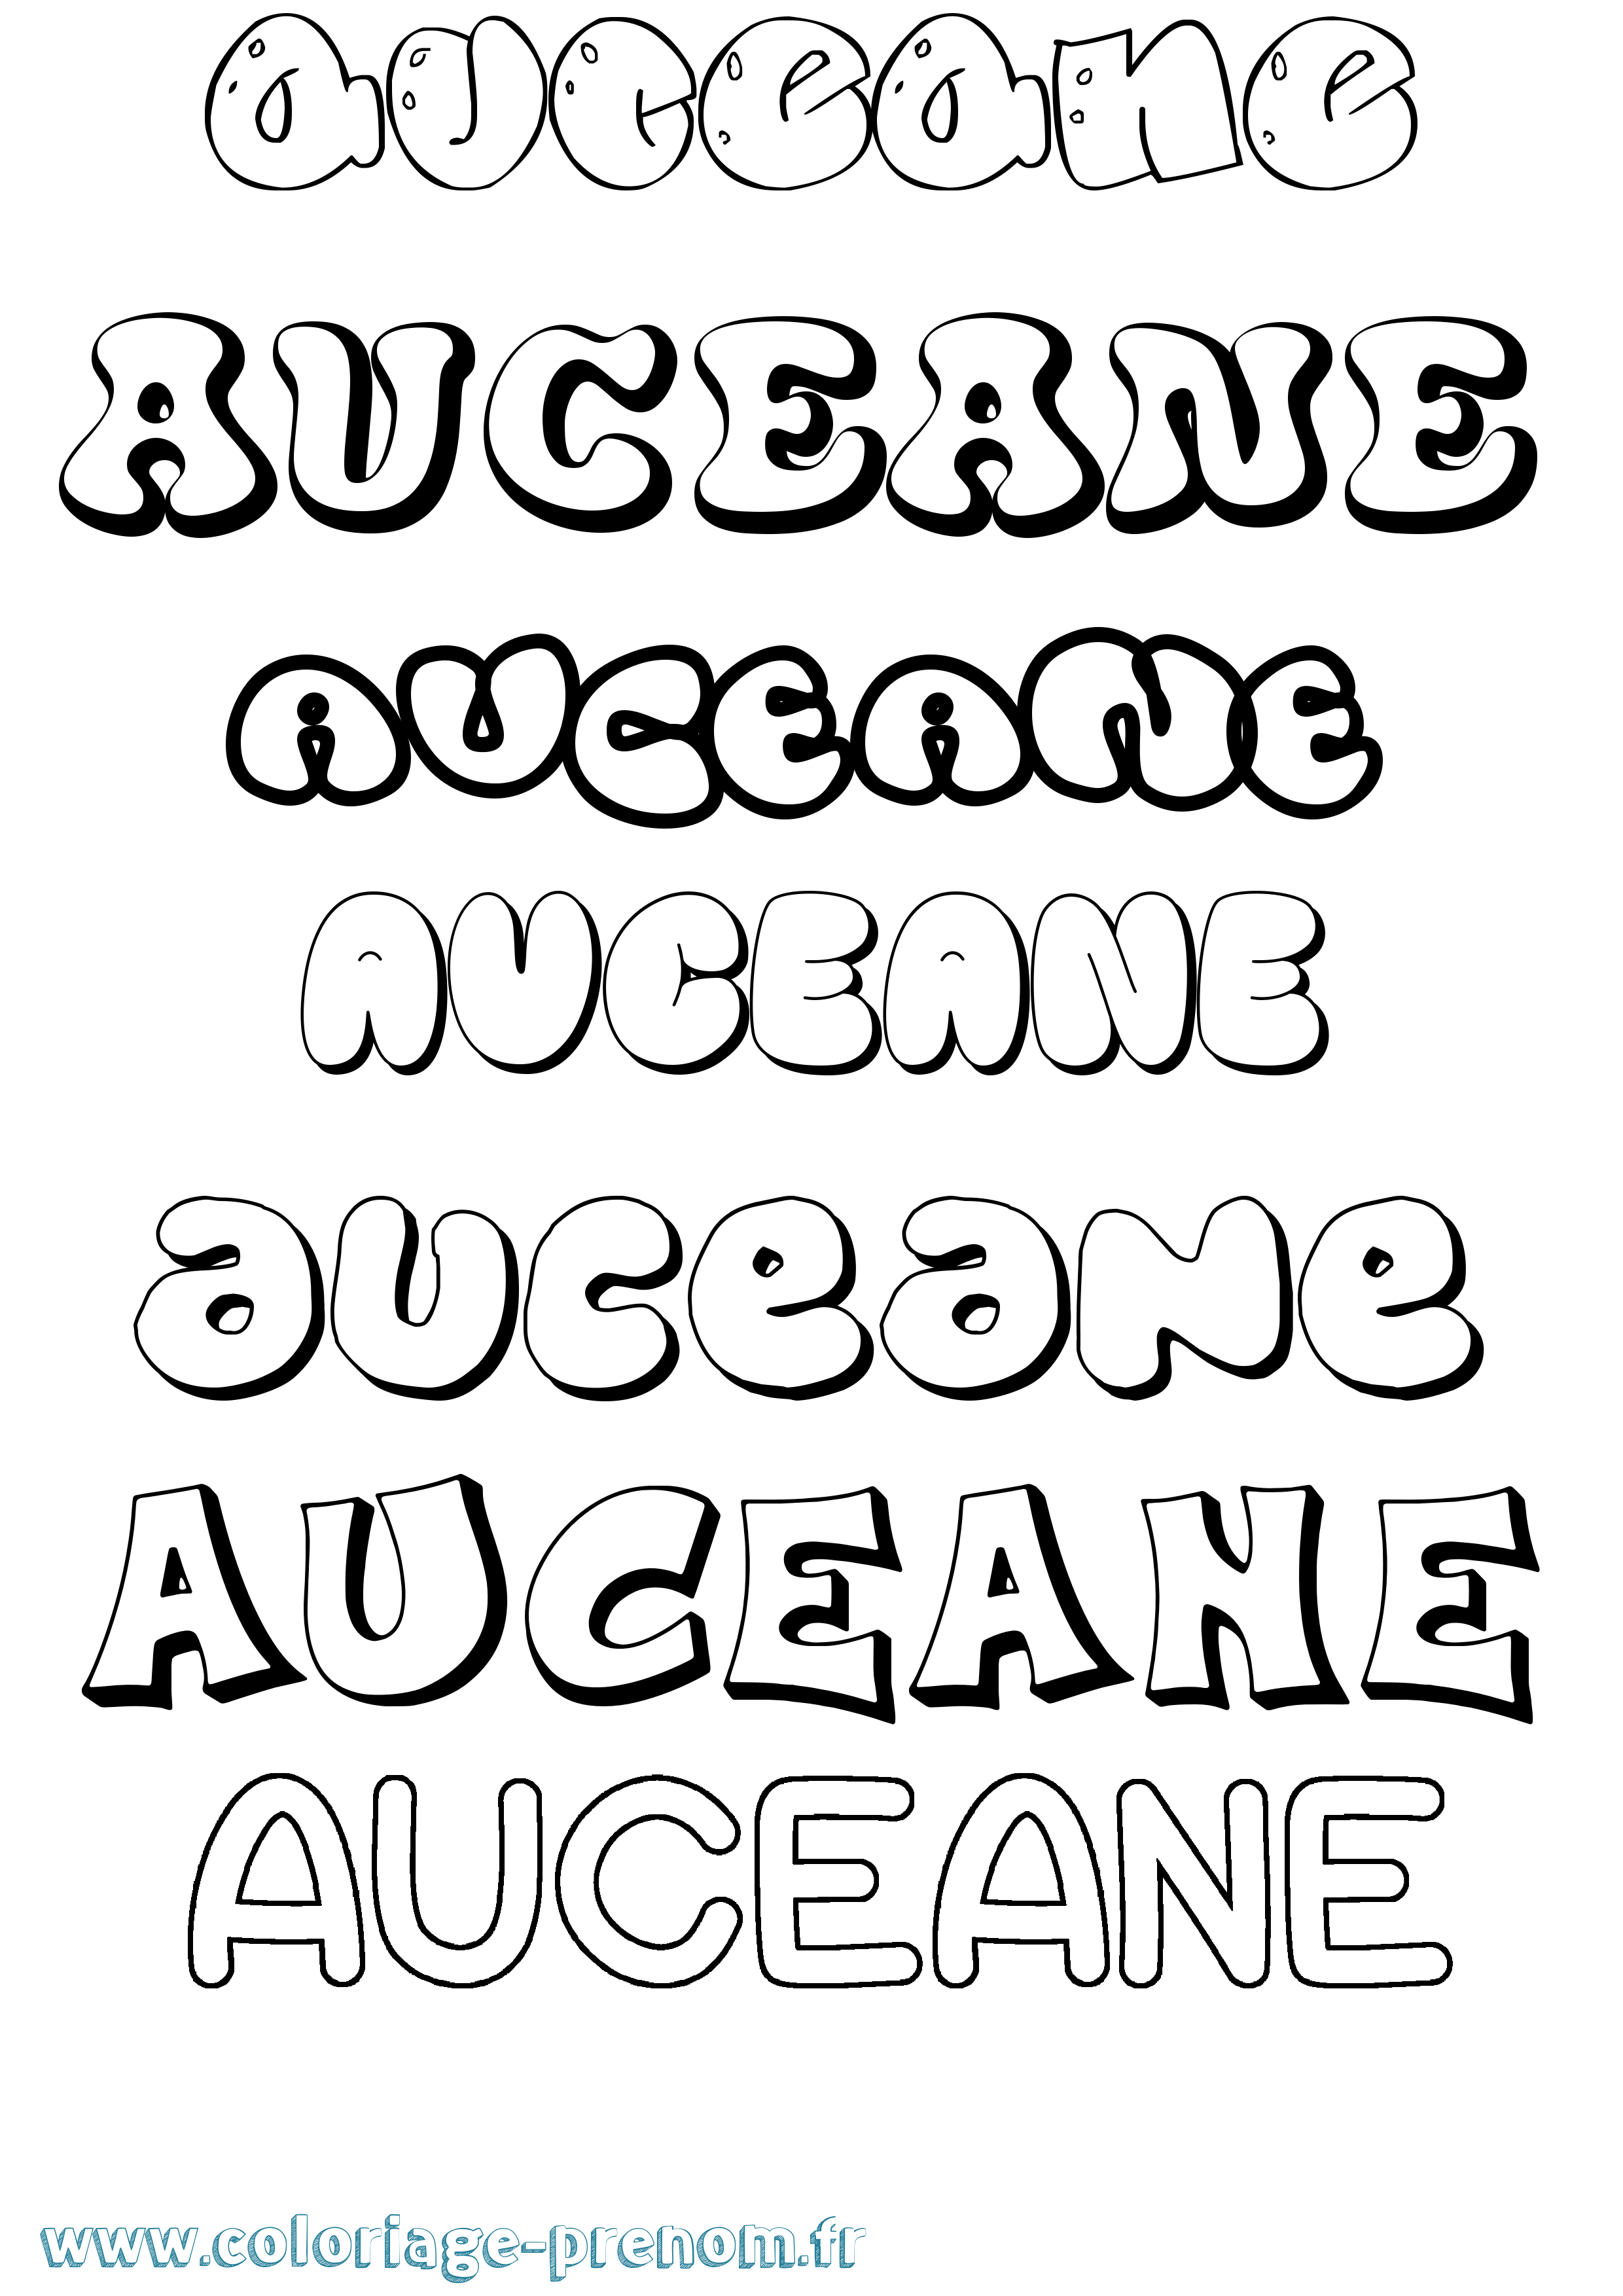 Coloriage prénom Auceane Bubble